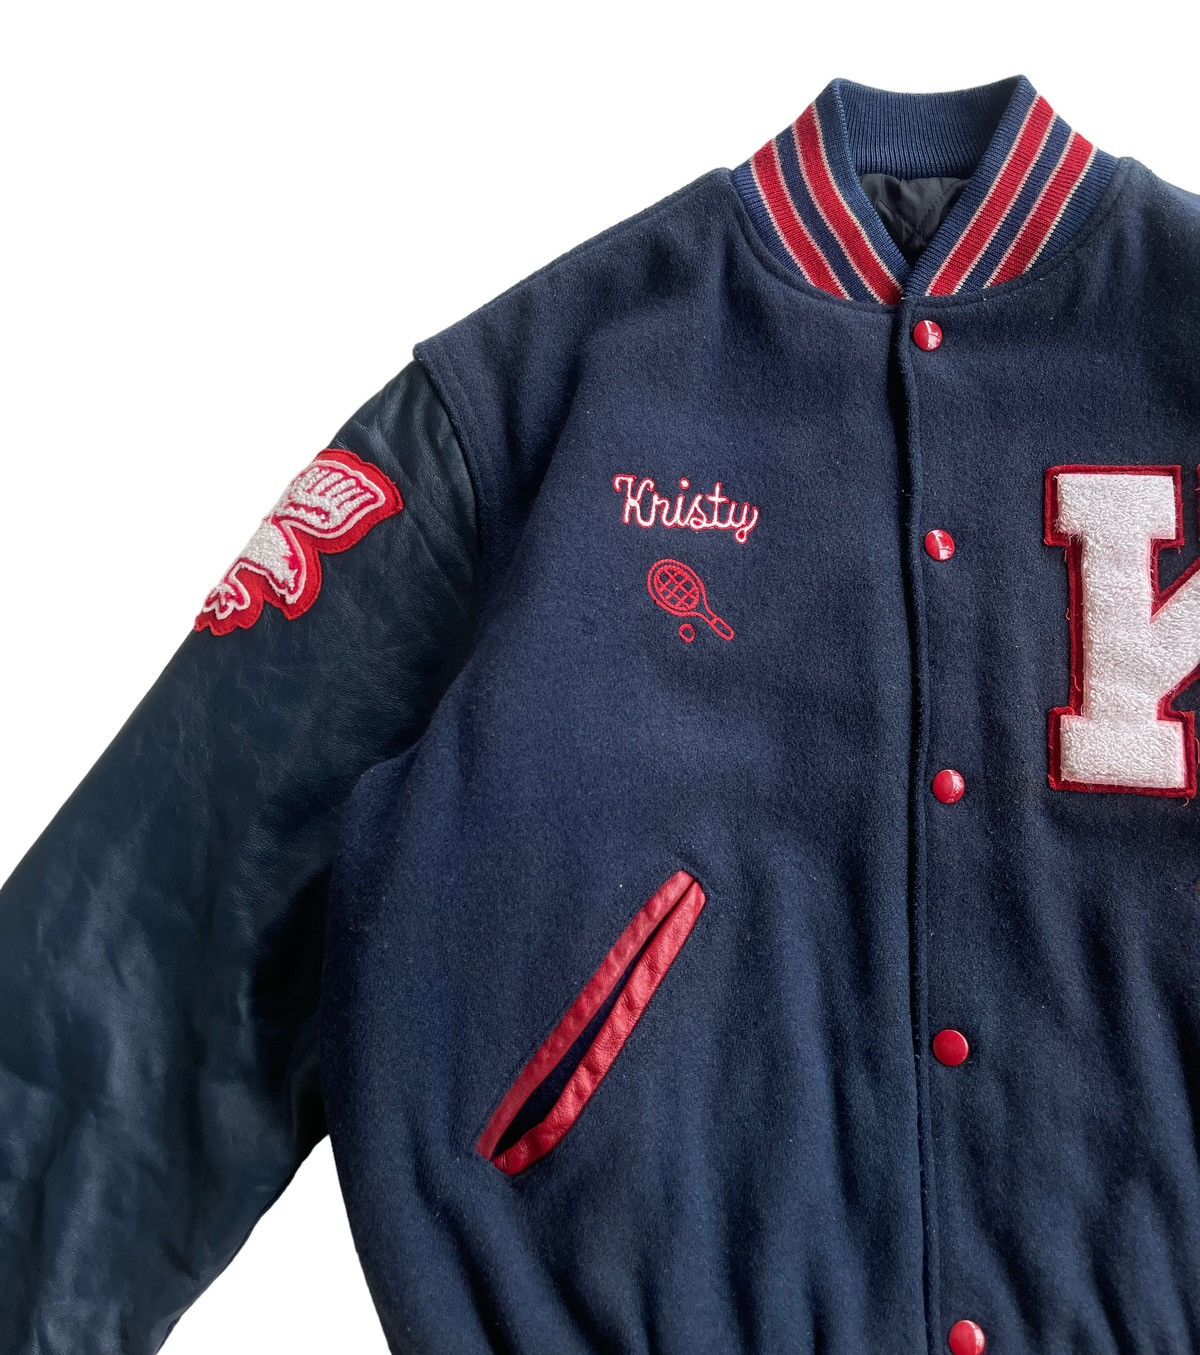 Vintage Vintage 70s Delong Kennedy Varsity Jacket Size US M / EU 48-50 / 2 - 8 Thumbnail